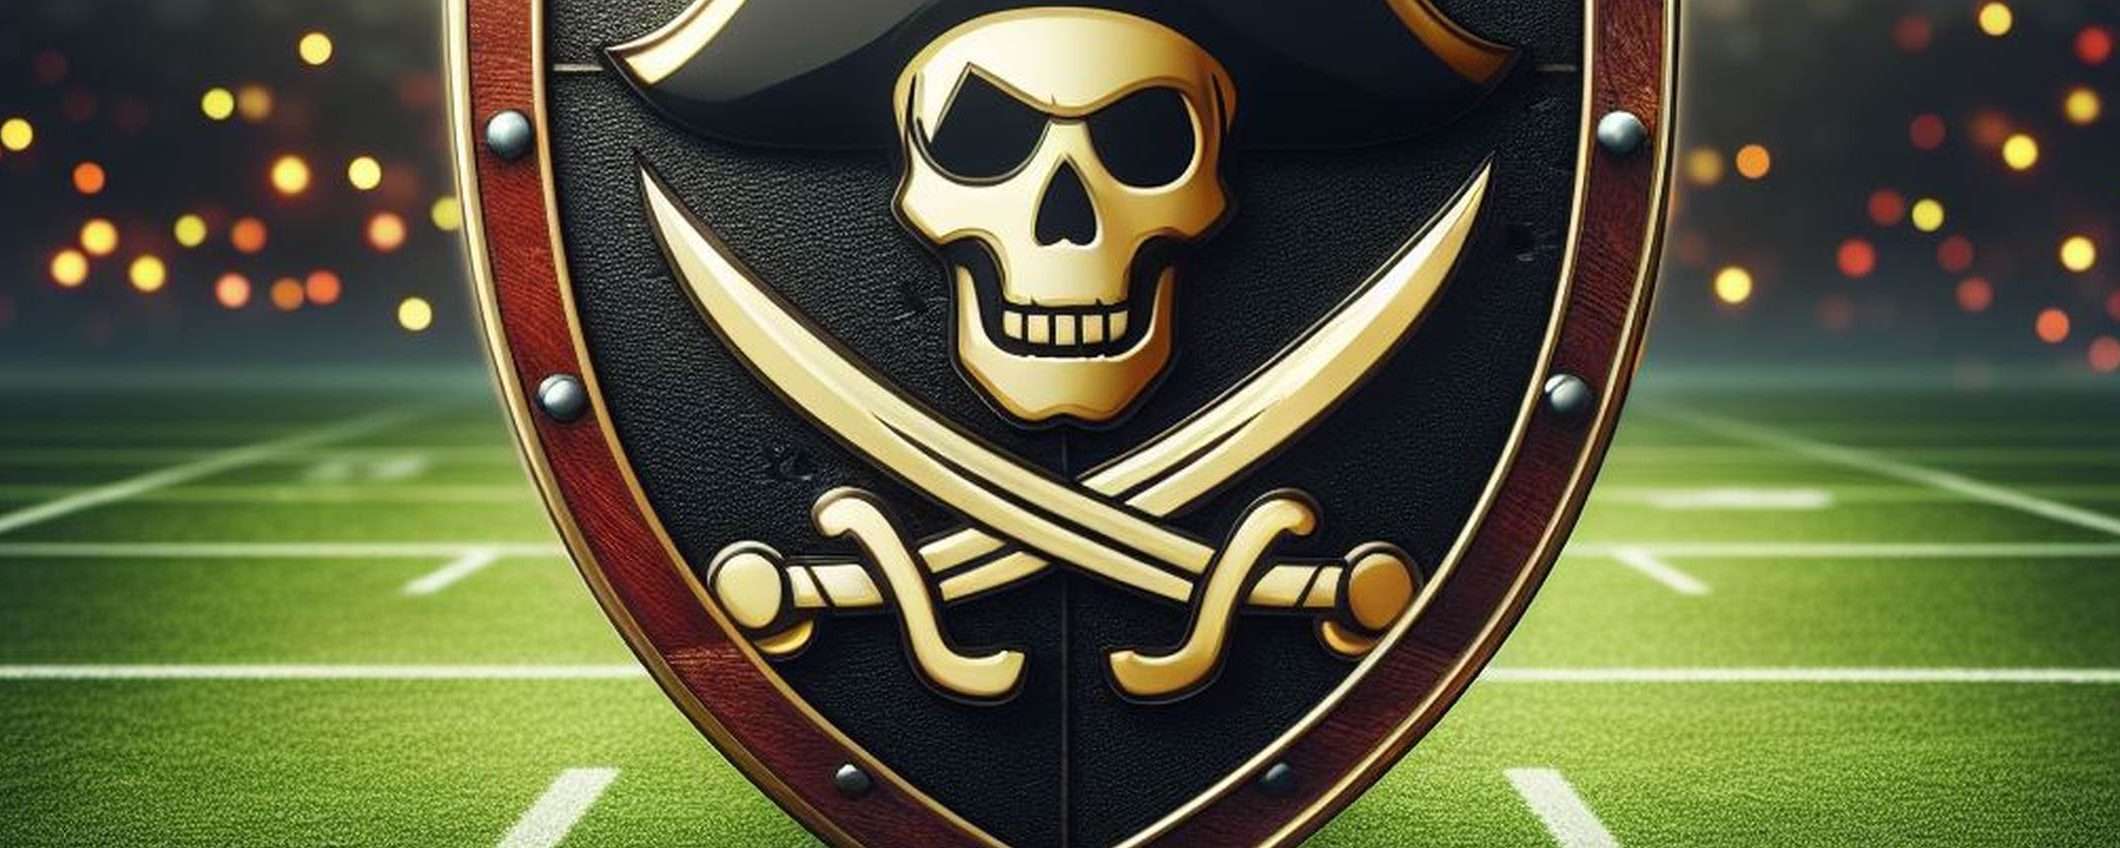 Piracy Shield: Assoprovider vuole maggiore trasparenza